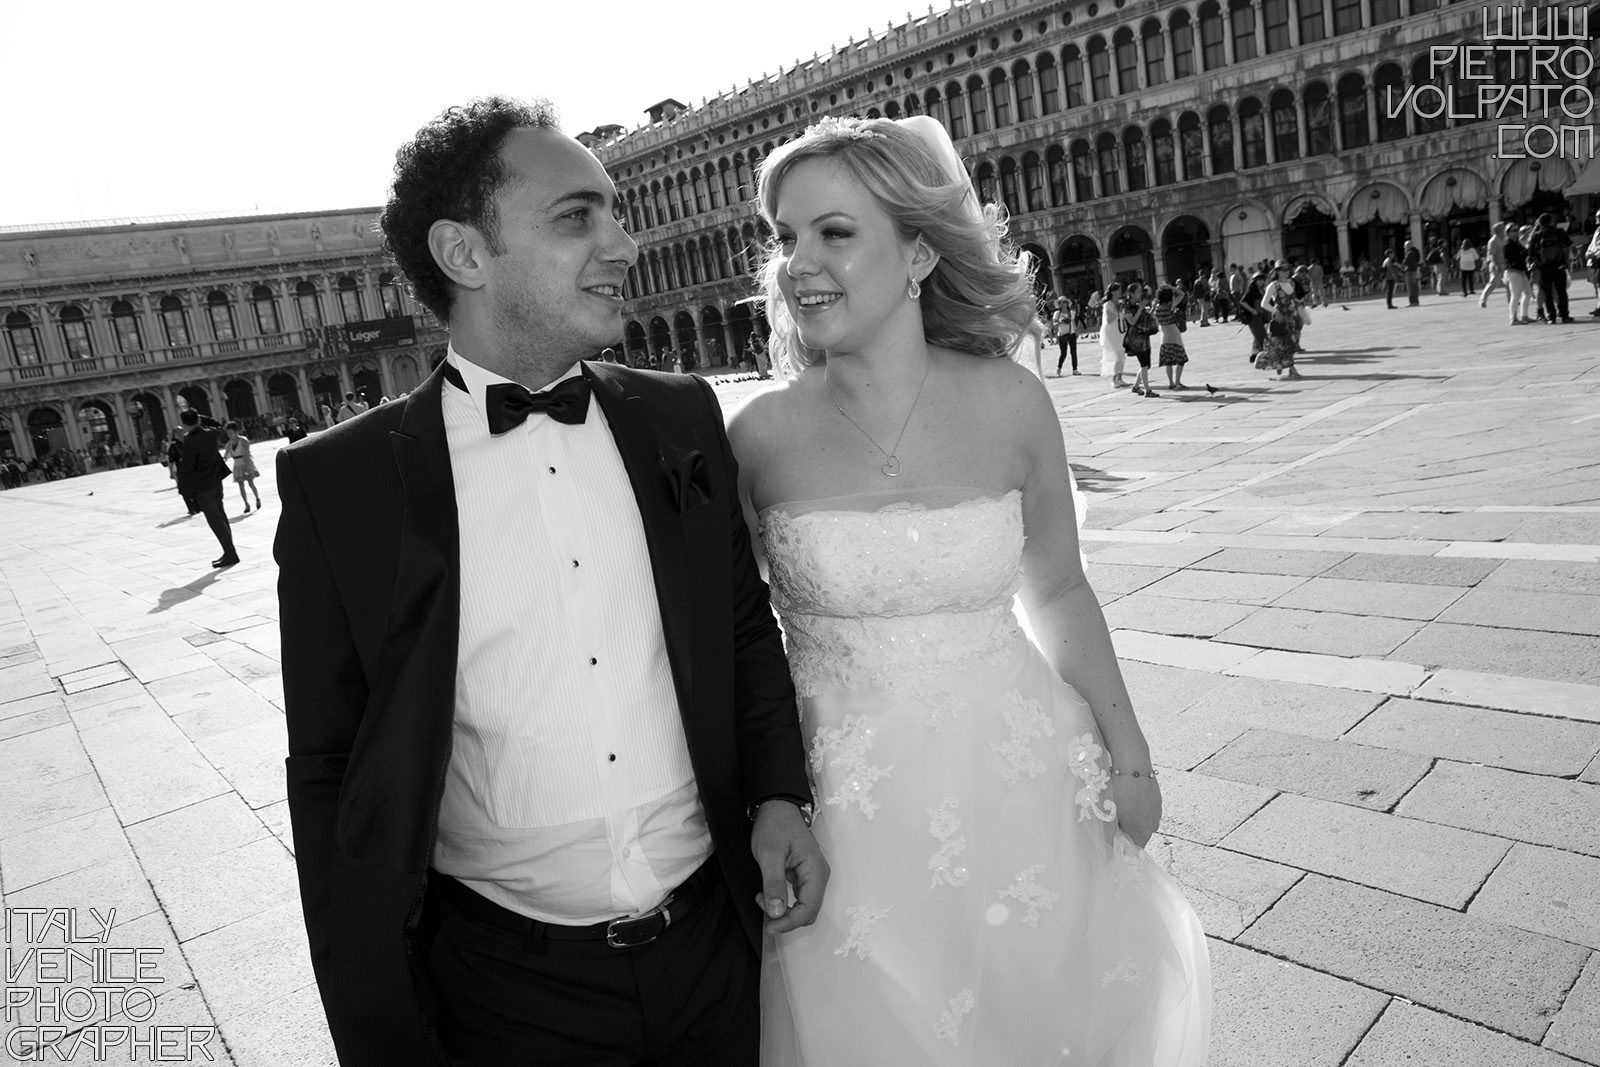 Venezia fotografo professionista per servizio fotografico viaggio di nozze sposi realizzato durante una passeggiata e un giro in gondola